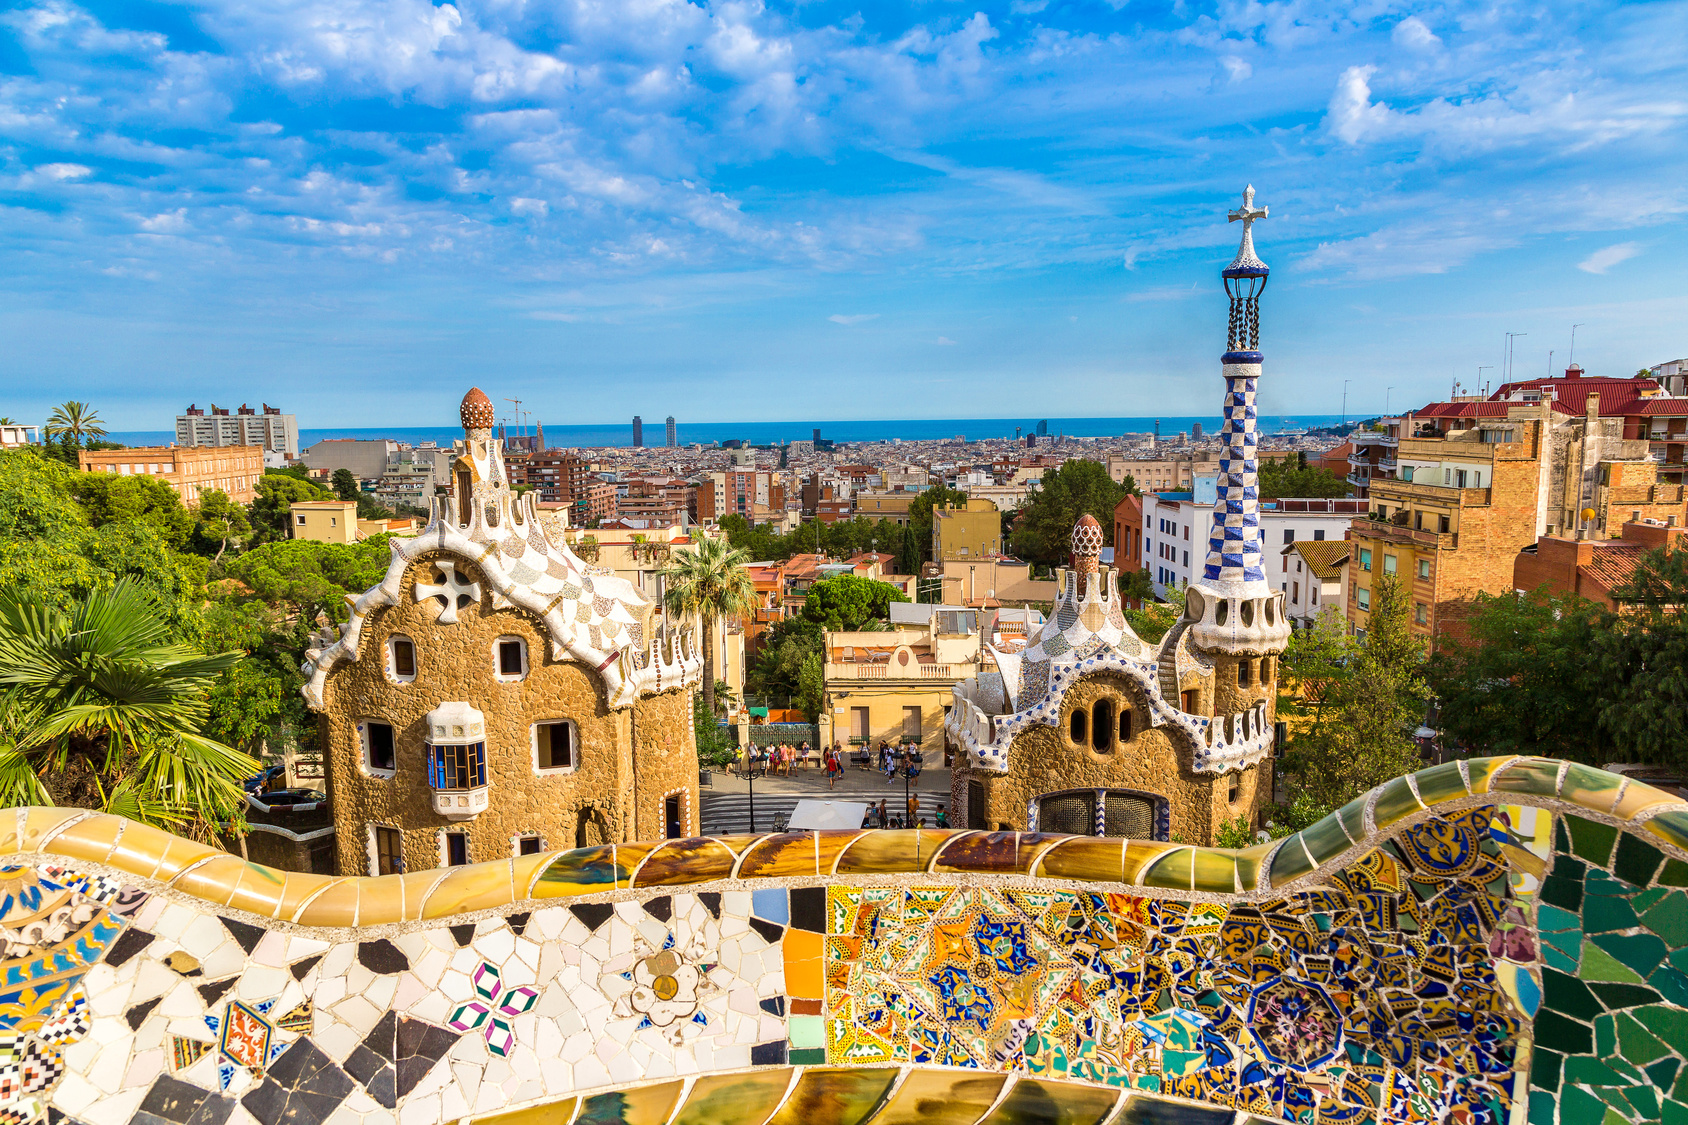 Lire la suite à propos de l’article Barcelone, l’originalité architecturale à l’espagnol